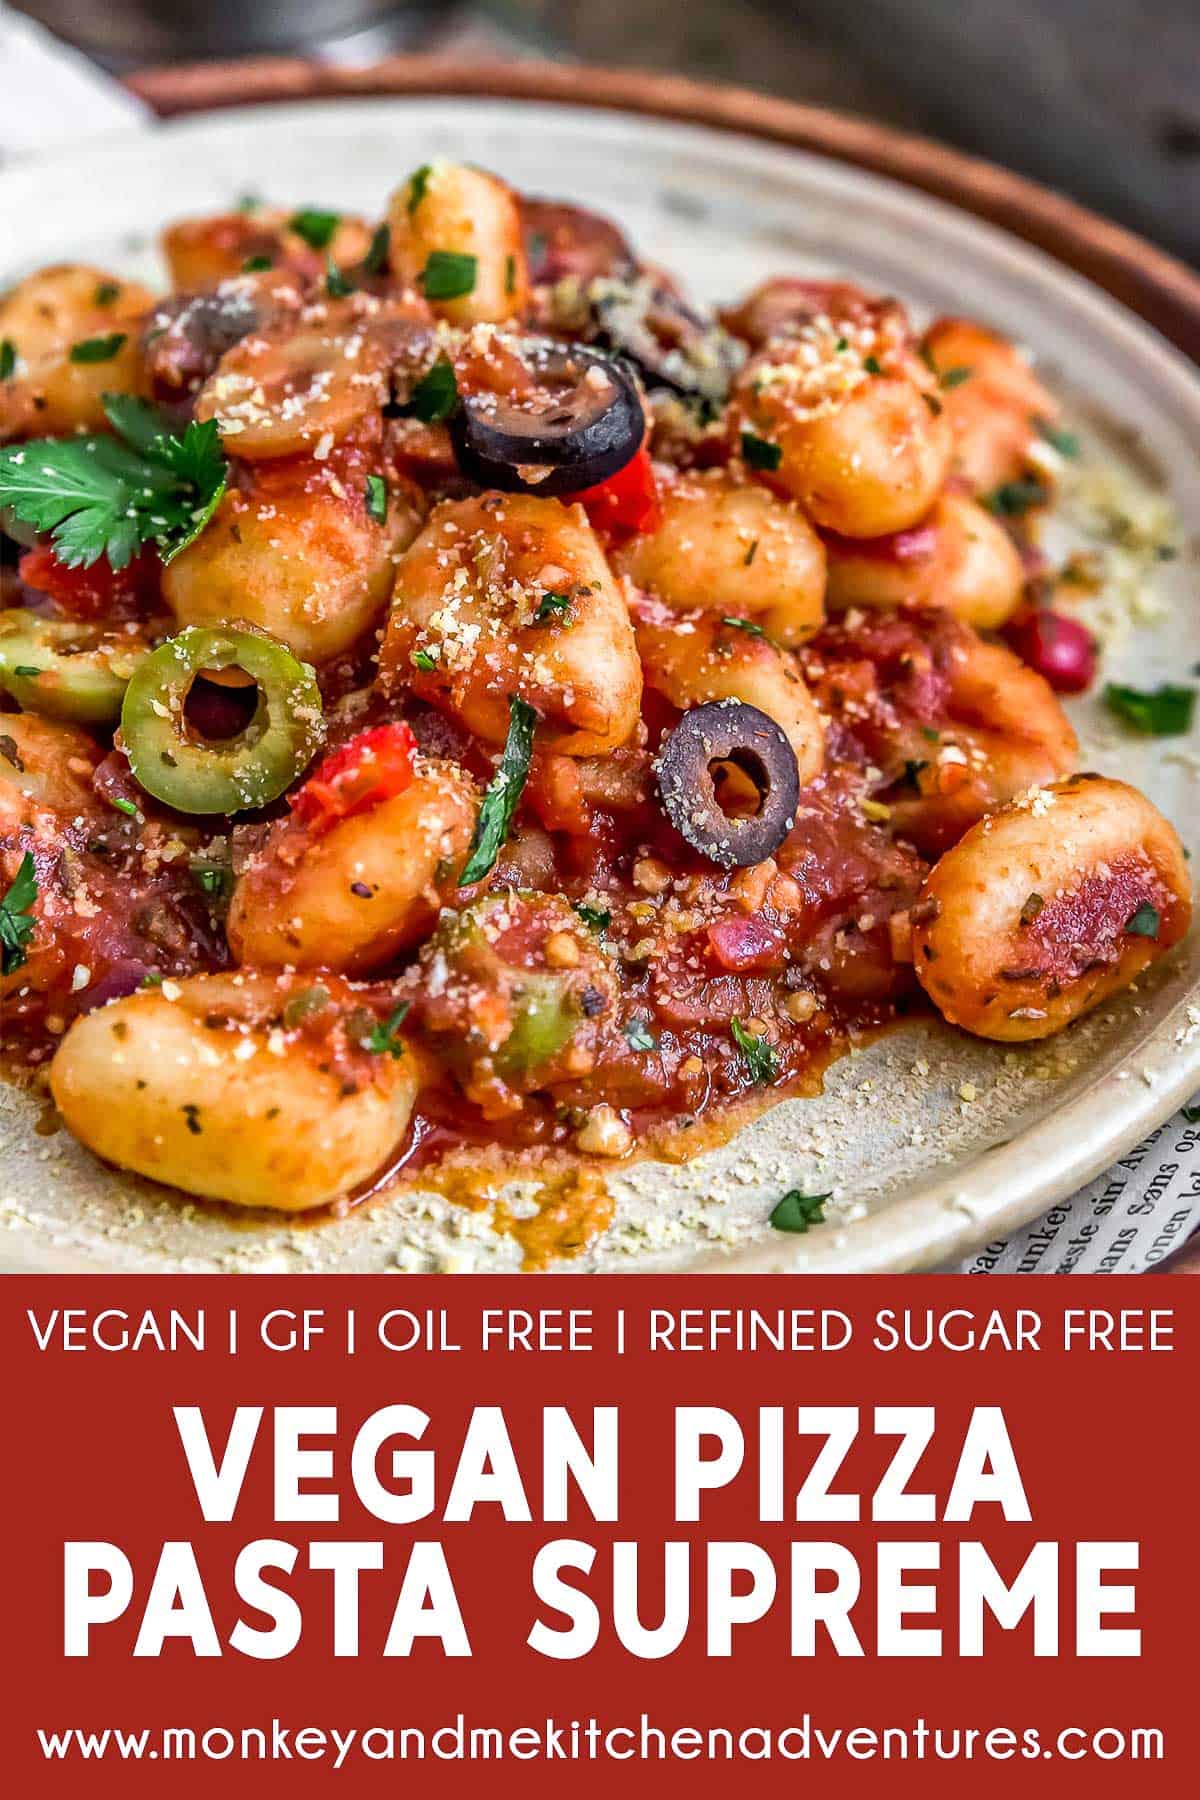 Vegan Pizza Pasta Supreme with text description